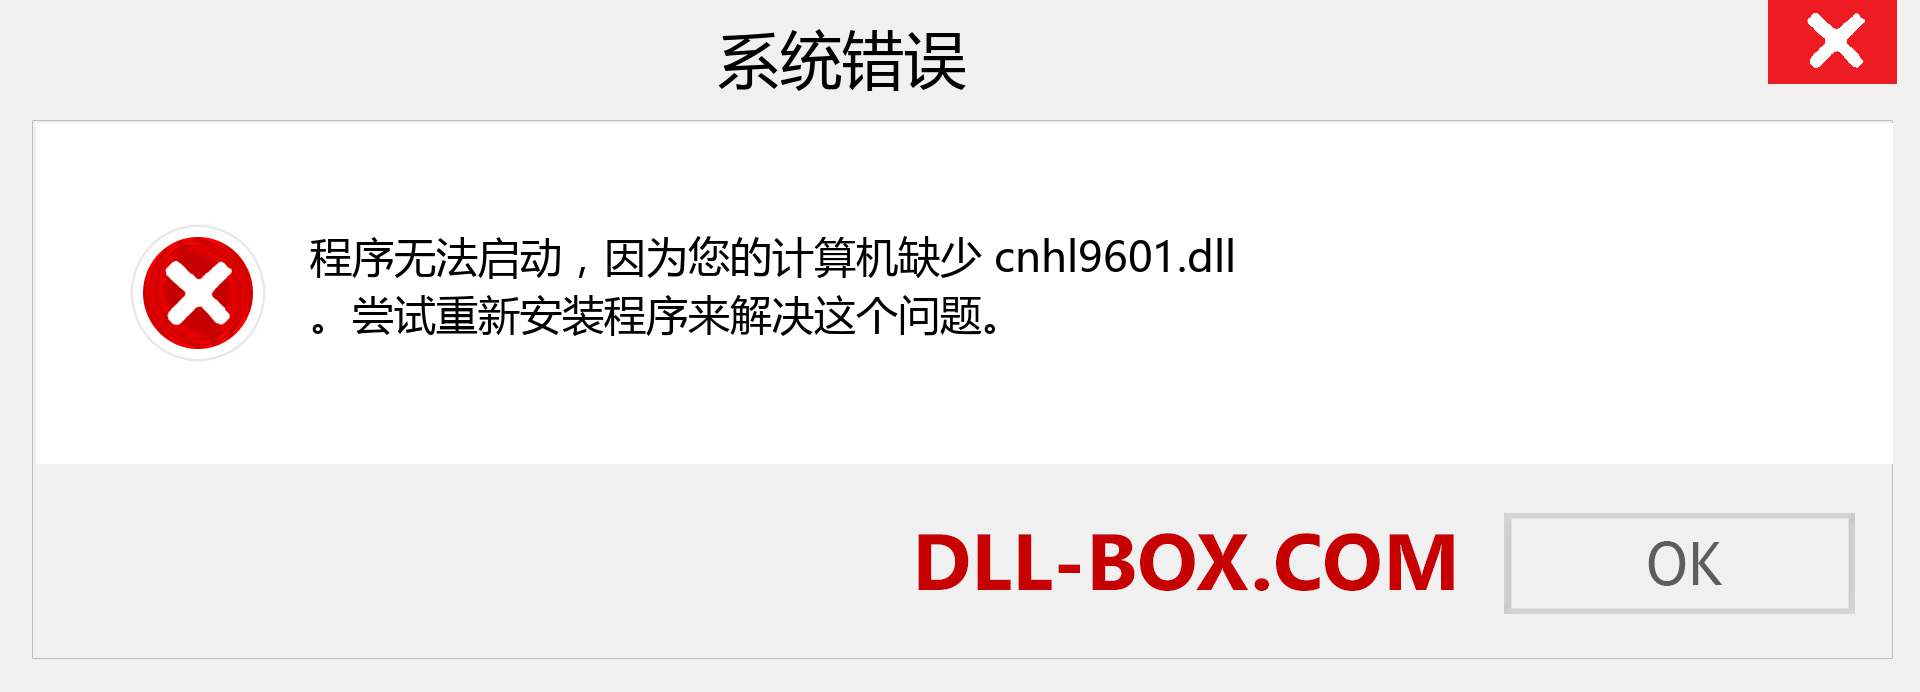 cnhl9601.dll 文件丢失？。 适用于 Windows 7、8、10 的下载 - 修复 Windows、照片、图像上的 cnhl9601 dll 丢失错误